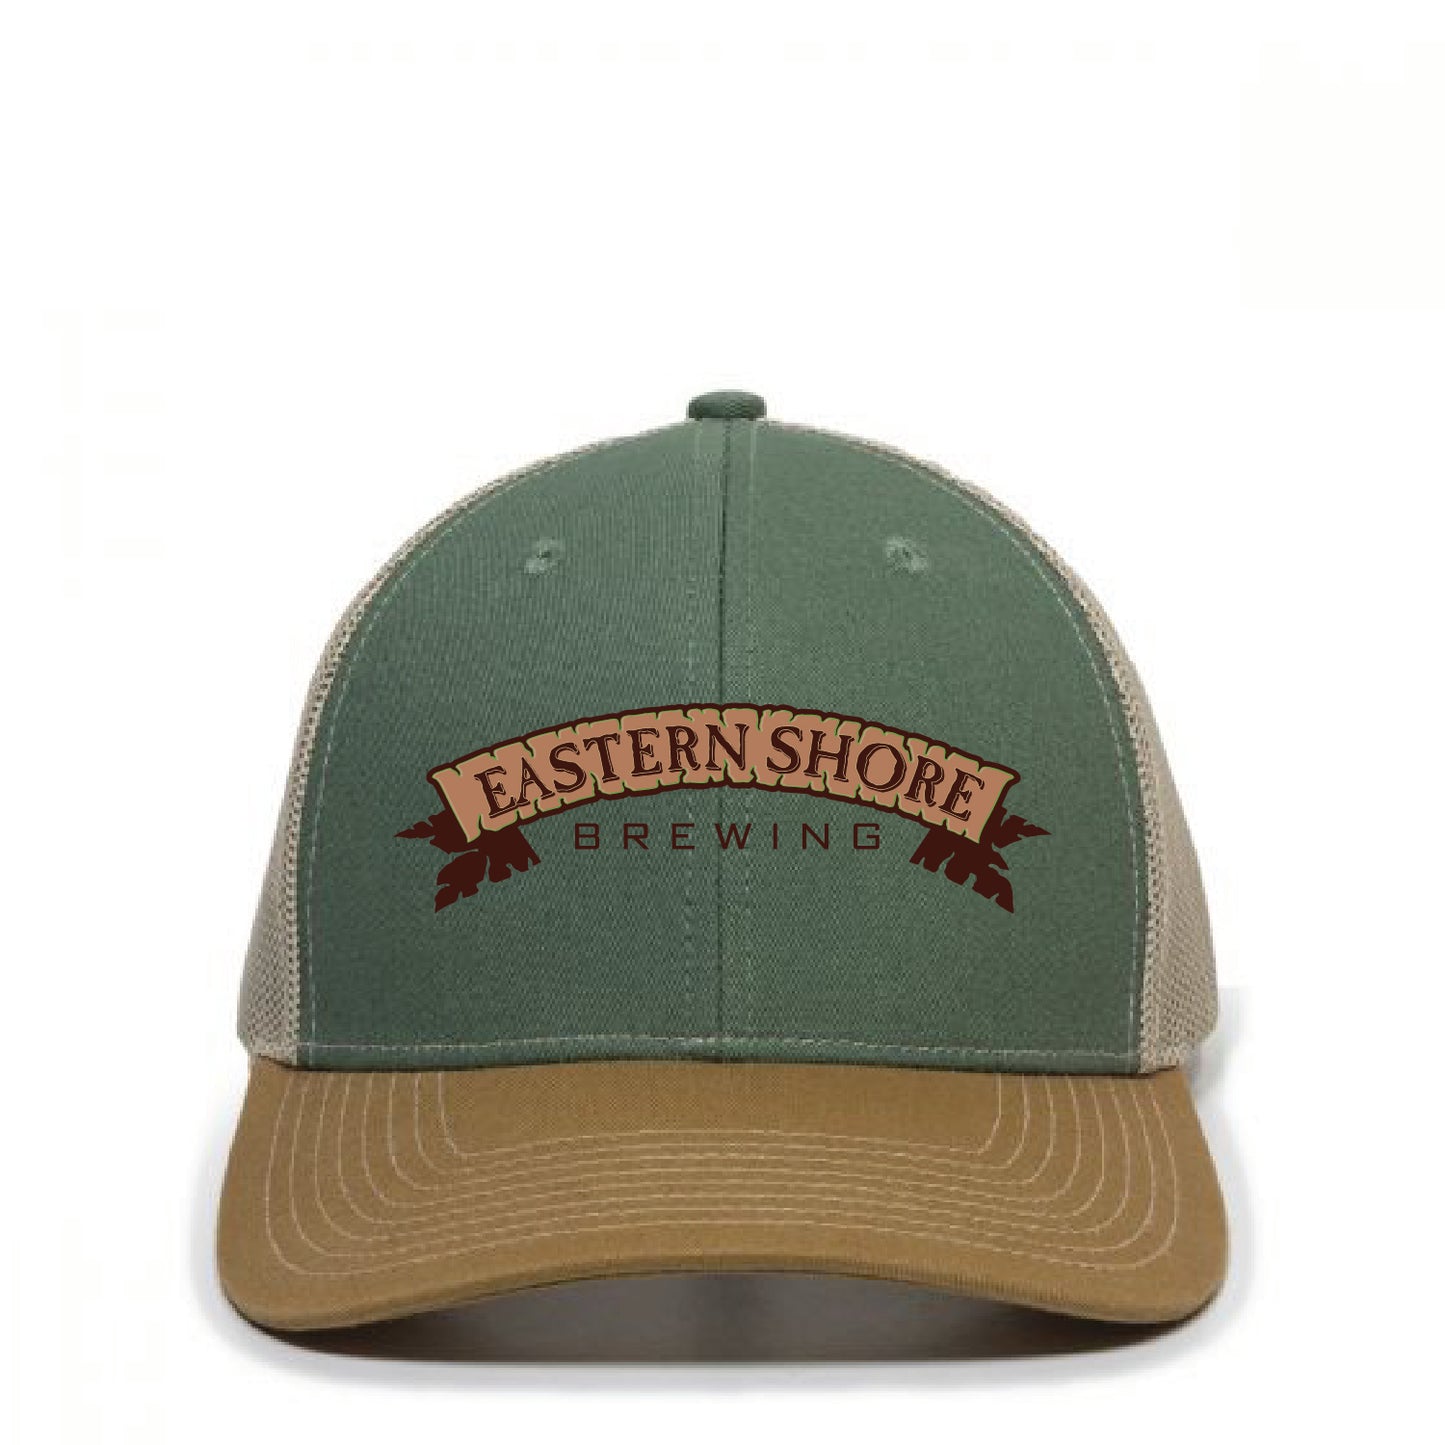 Eastern Shore Brewing Trucker Hat